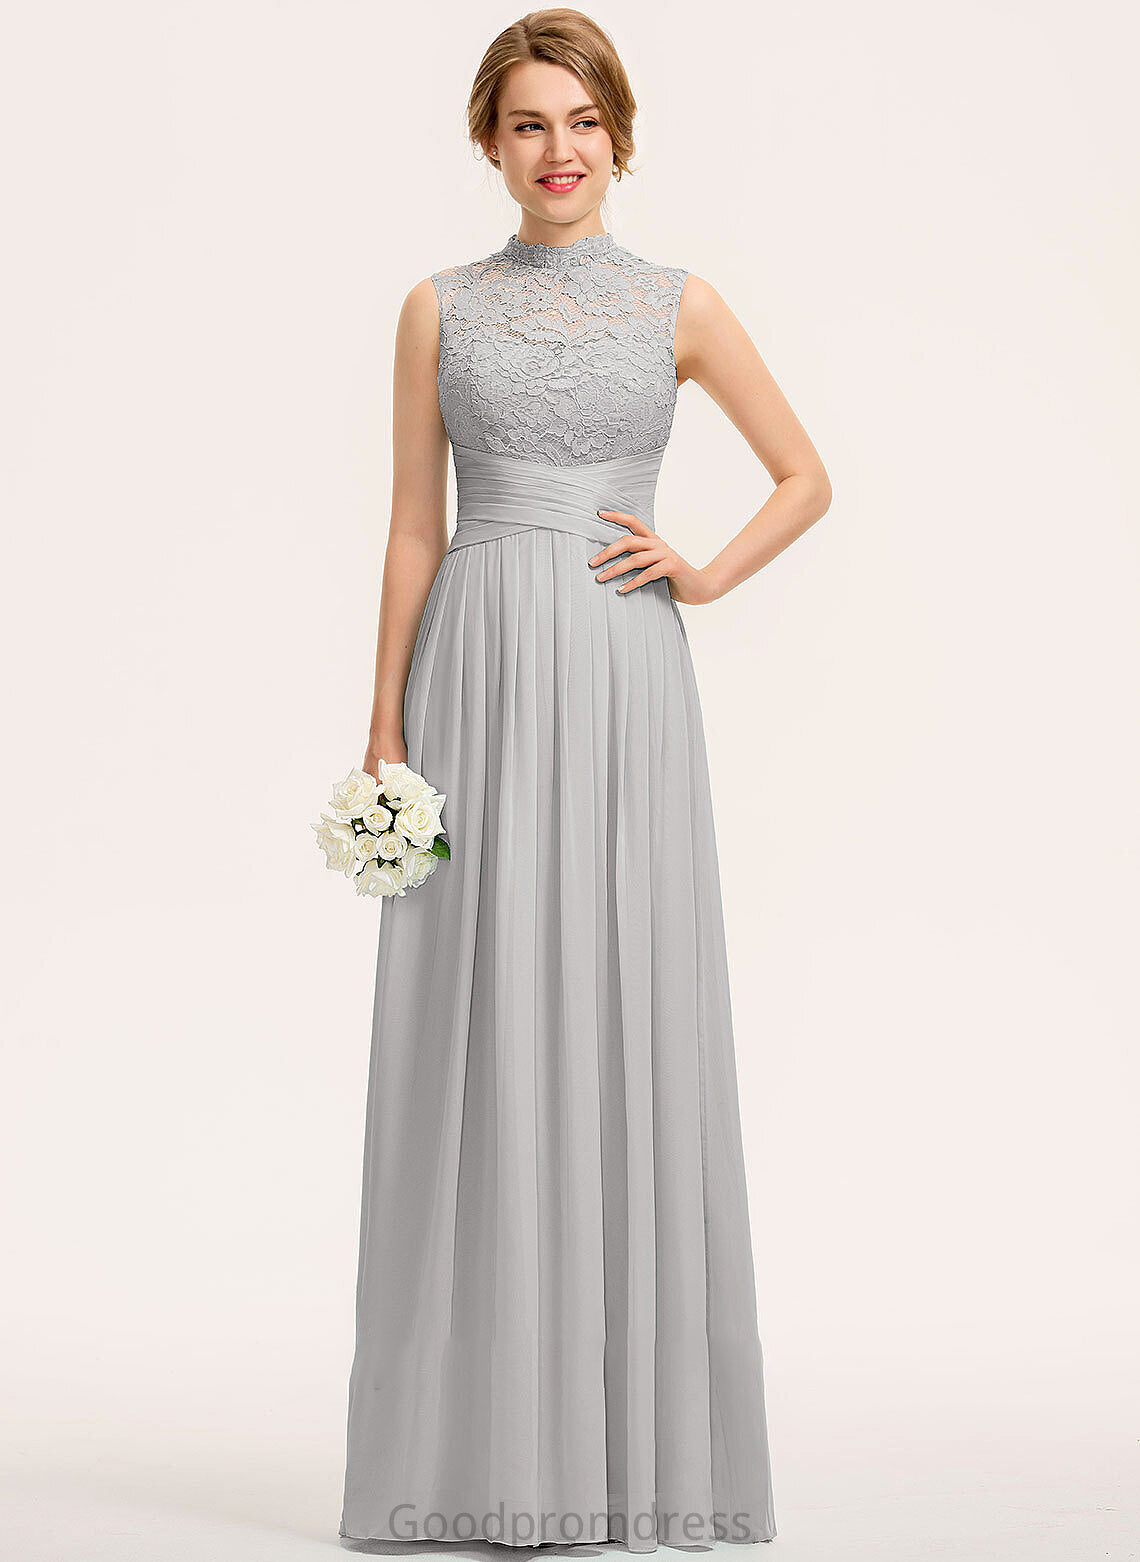 Embellishment HighNeck A-Line Ruffle Floor-Length Neckline Silhouette Fabric Length Susan A-Line/Princess Natural Waist Bridesmaid Dresses